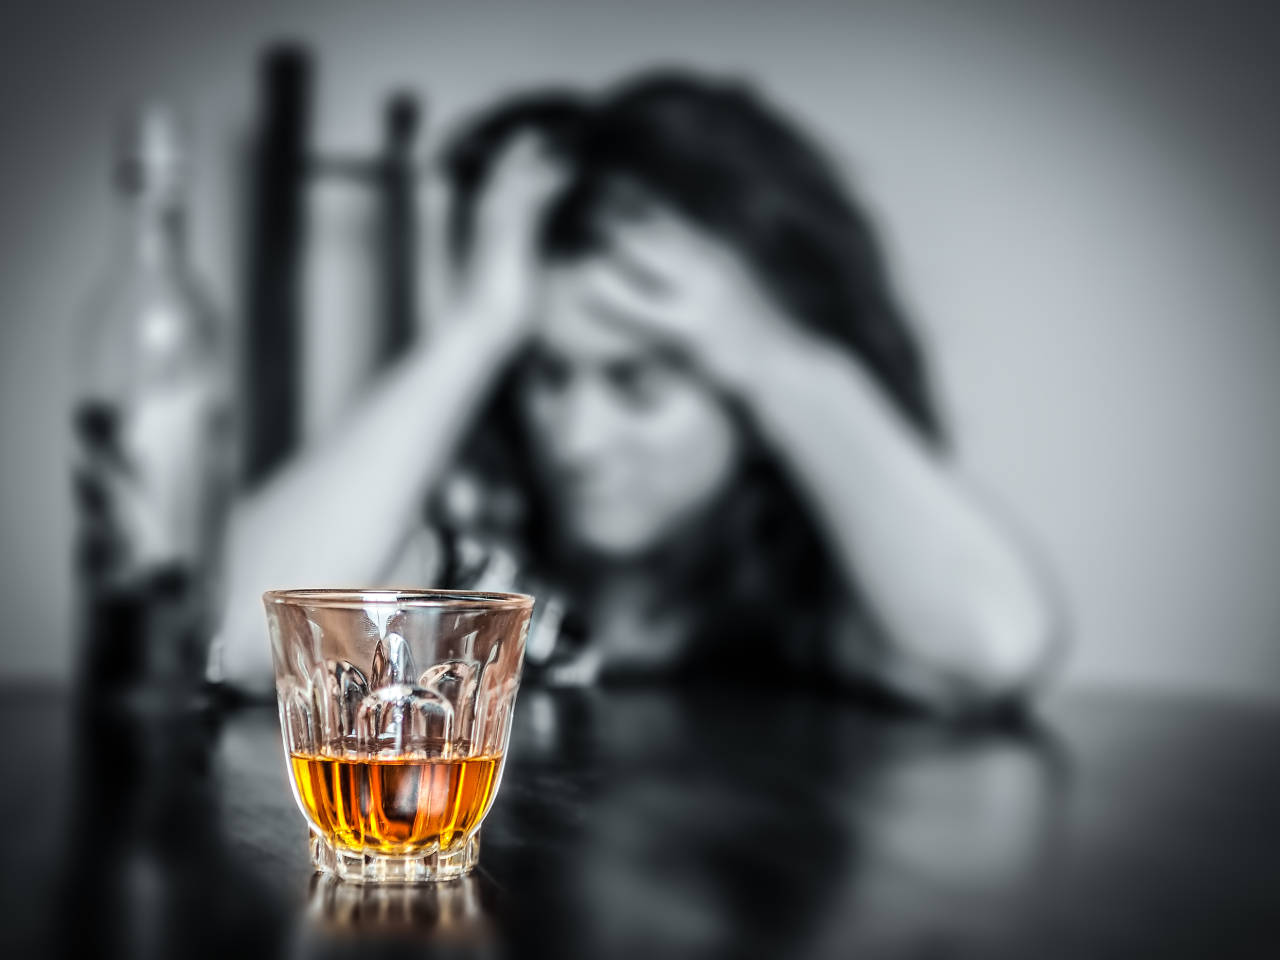 Por que misturar bebida alcoólica dá ressaca? Saiba o motivo!